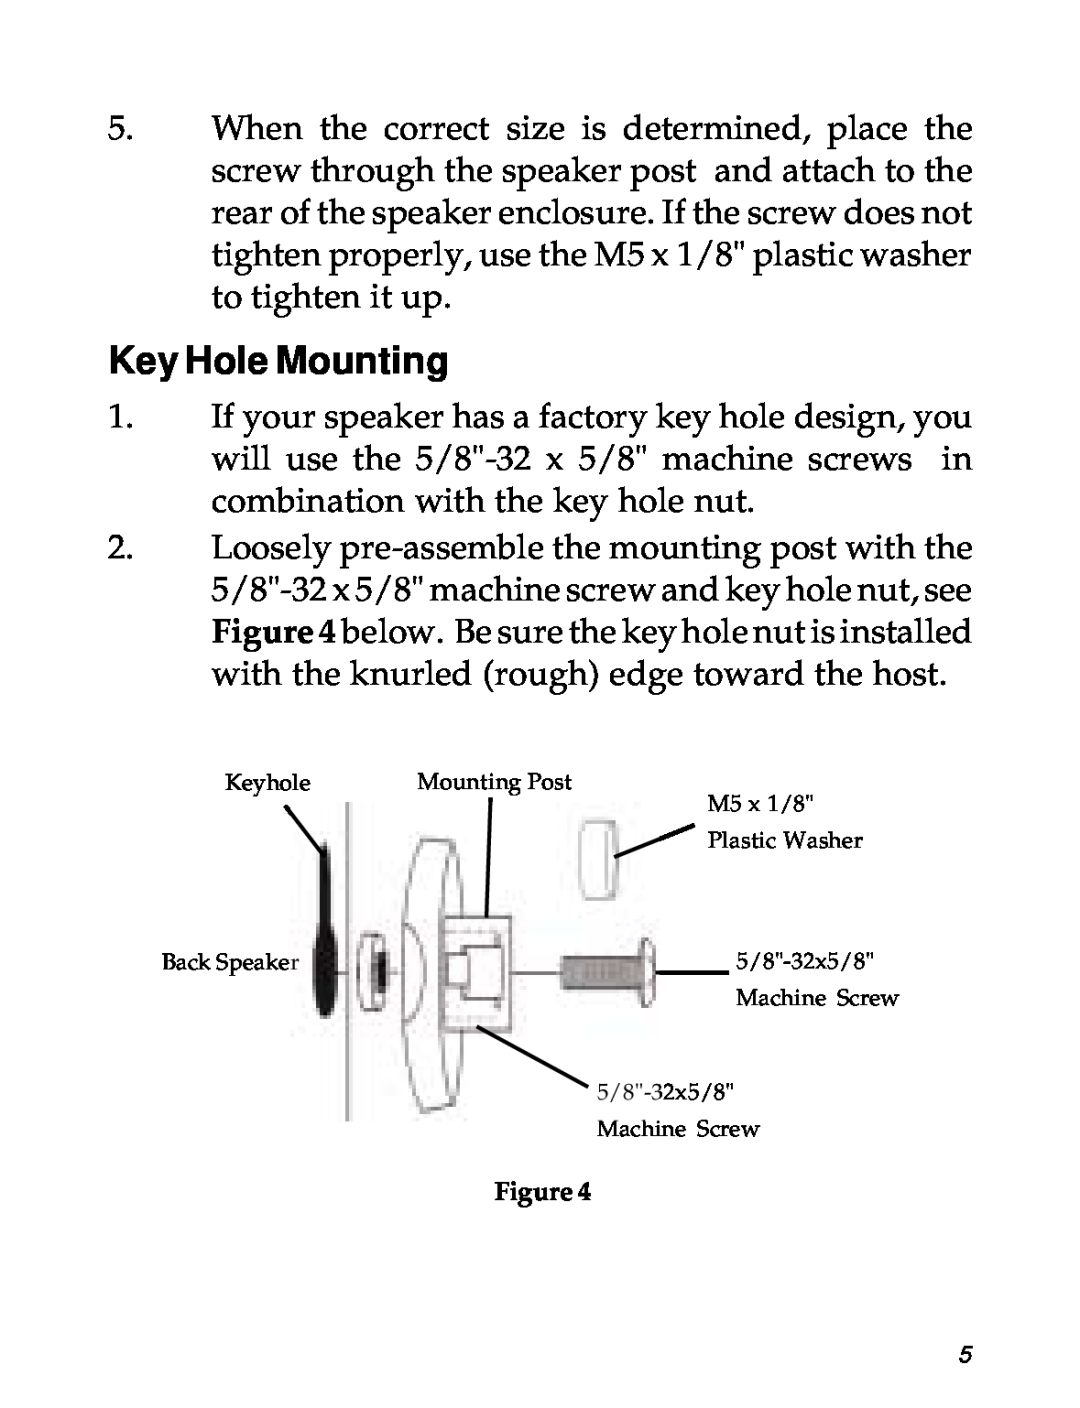 SIIG 04-0600A Key Hole Mounting, Keyhole, Mounting Post, M5 x 1/8, Plastic Washer, Back Speaker, 5/8-32x5/8, Machine Screw 